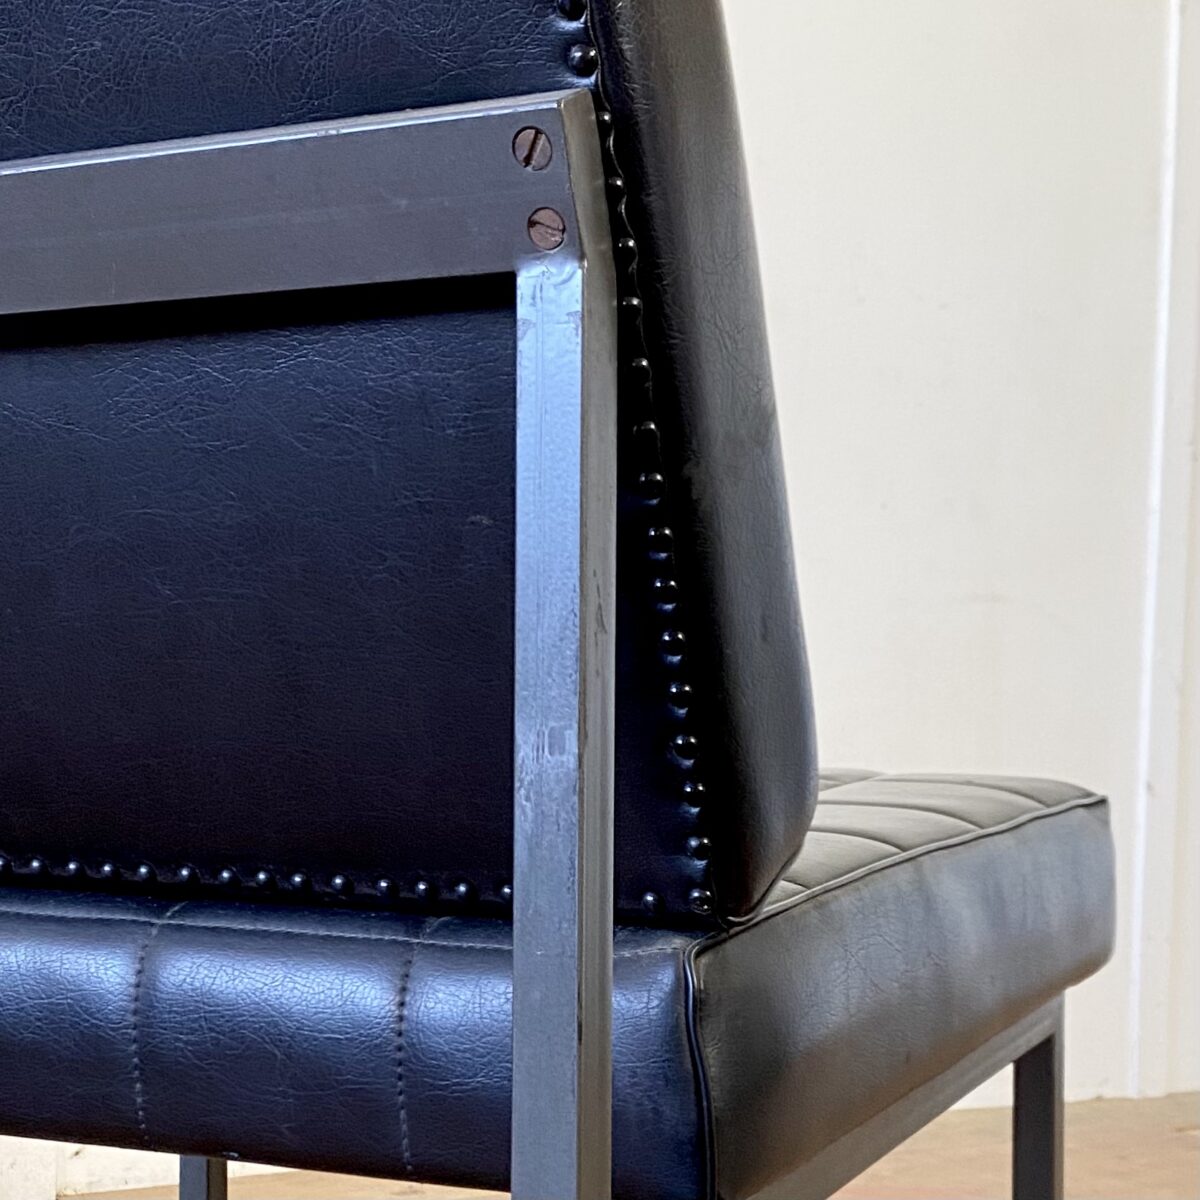 Deuxieme.shop 60er Jahre Easy chairs. Zwei schwarze Kunstleder Sessel. 65x55cm Sitzhöhe 37cm. Preis fürs Set. Die Sessel sind in gutem Vintage Zustand mit kleineren Abnutzungen. Das Metallgestell ist Anthrazit grau. 